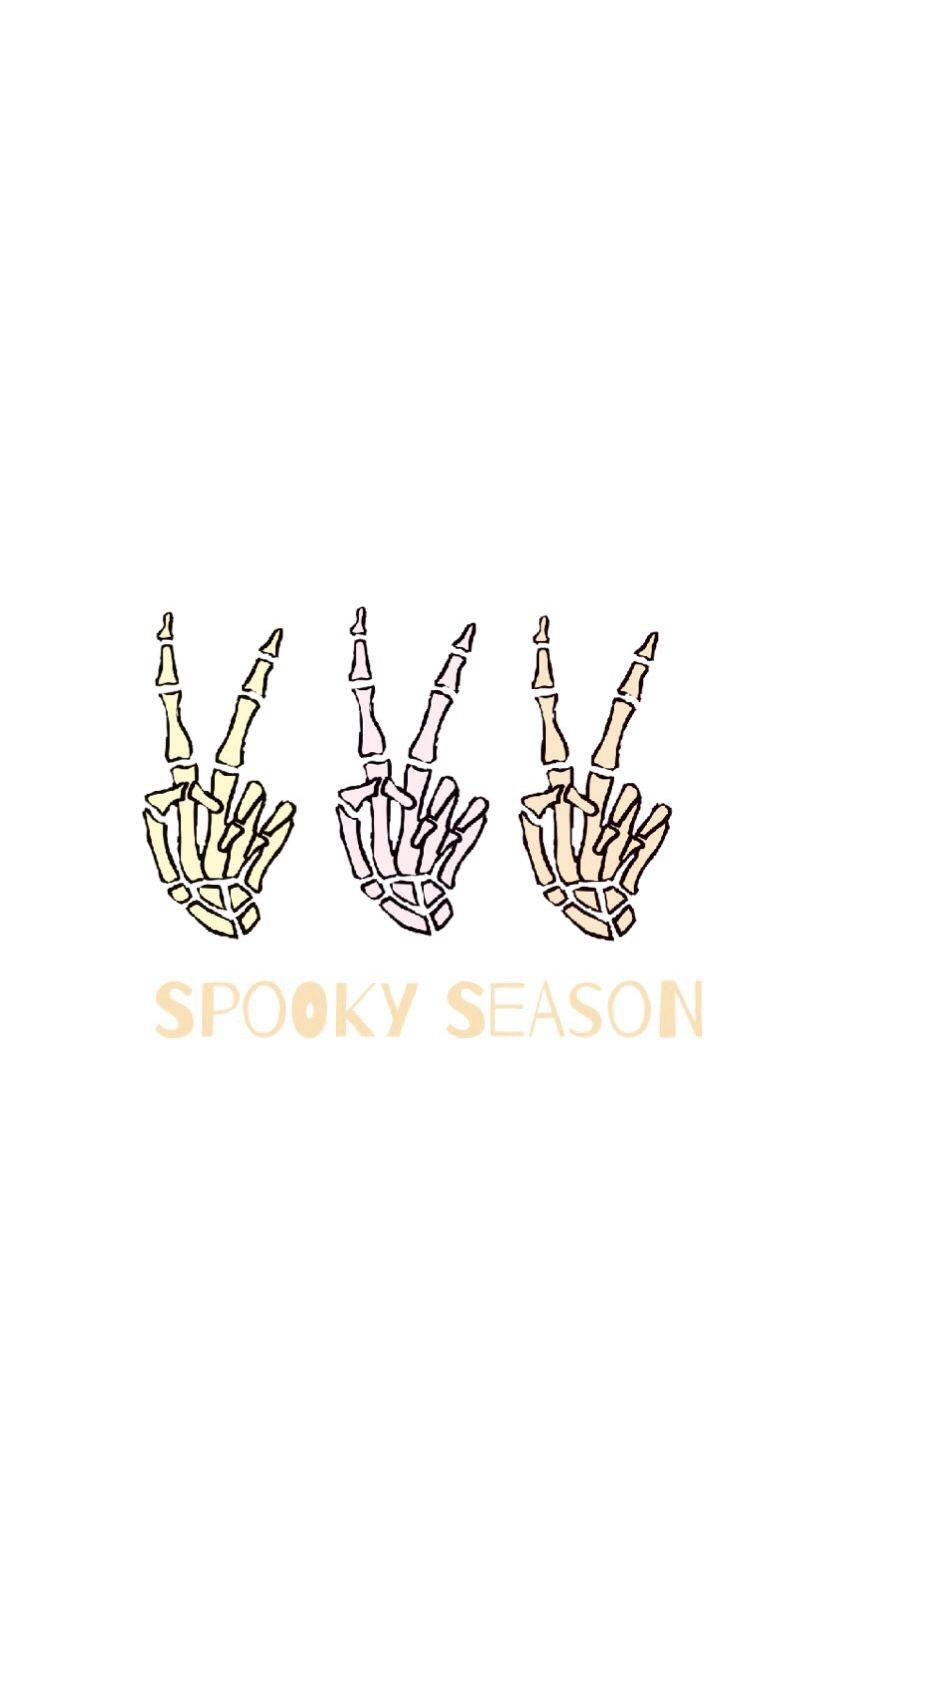 Spooky Season Skeleton Hands Wallpaper